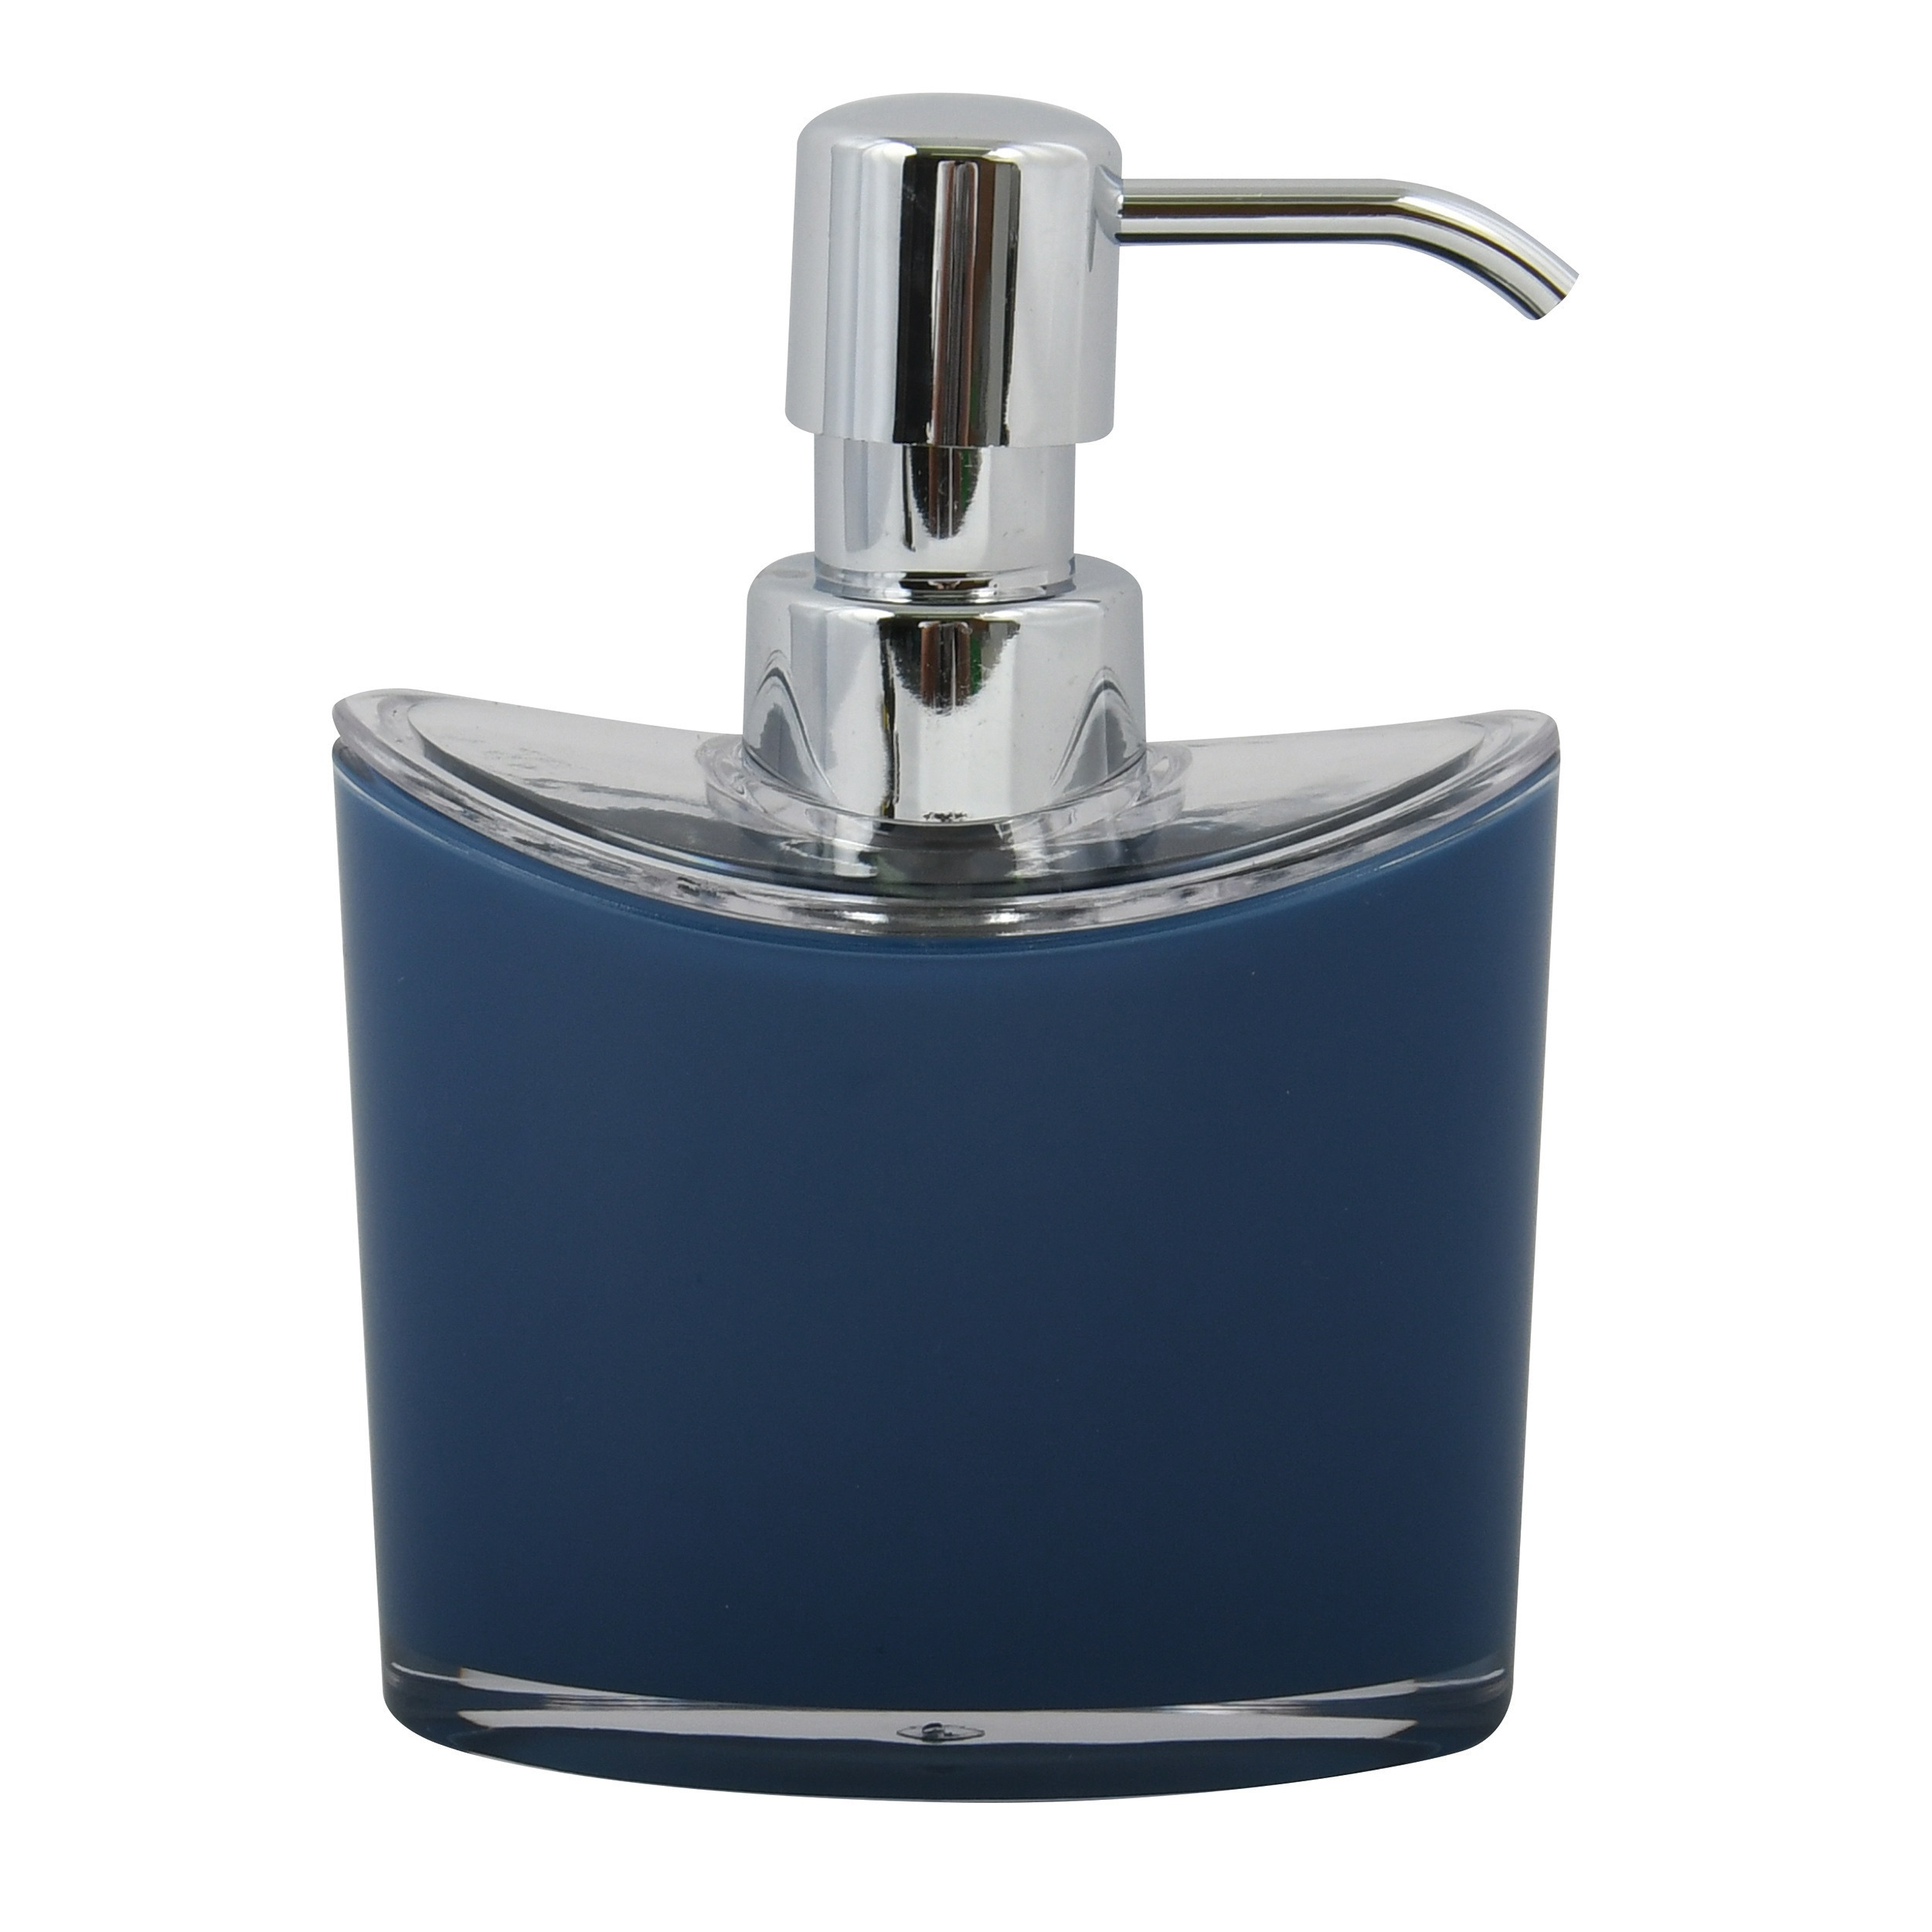 Zeeppompje-zeepdispenser Aveiro PS kunststof donkerblauw-zilver 11 x 14 cm 260 ml